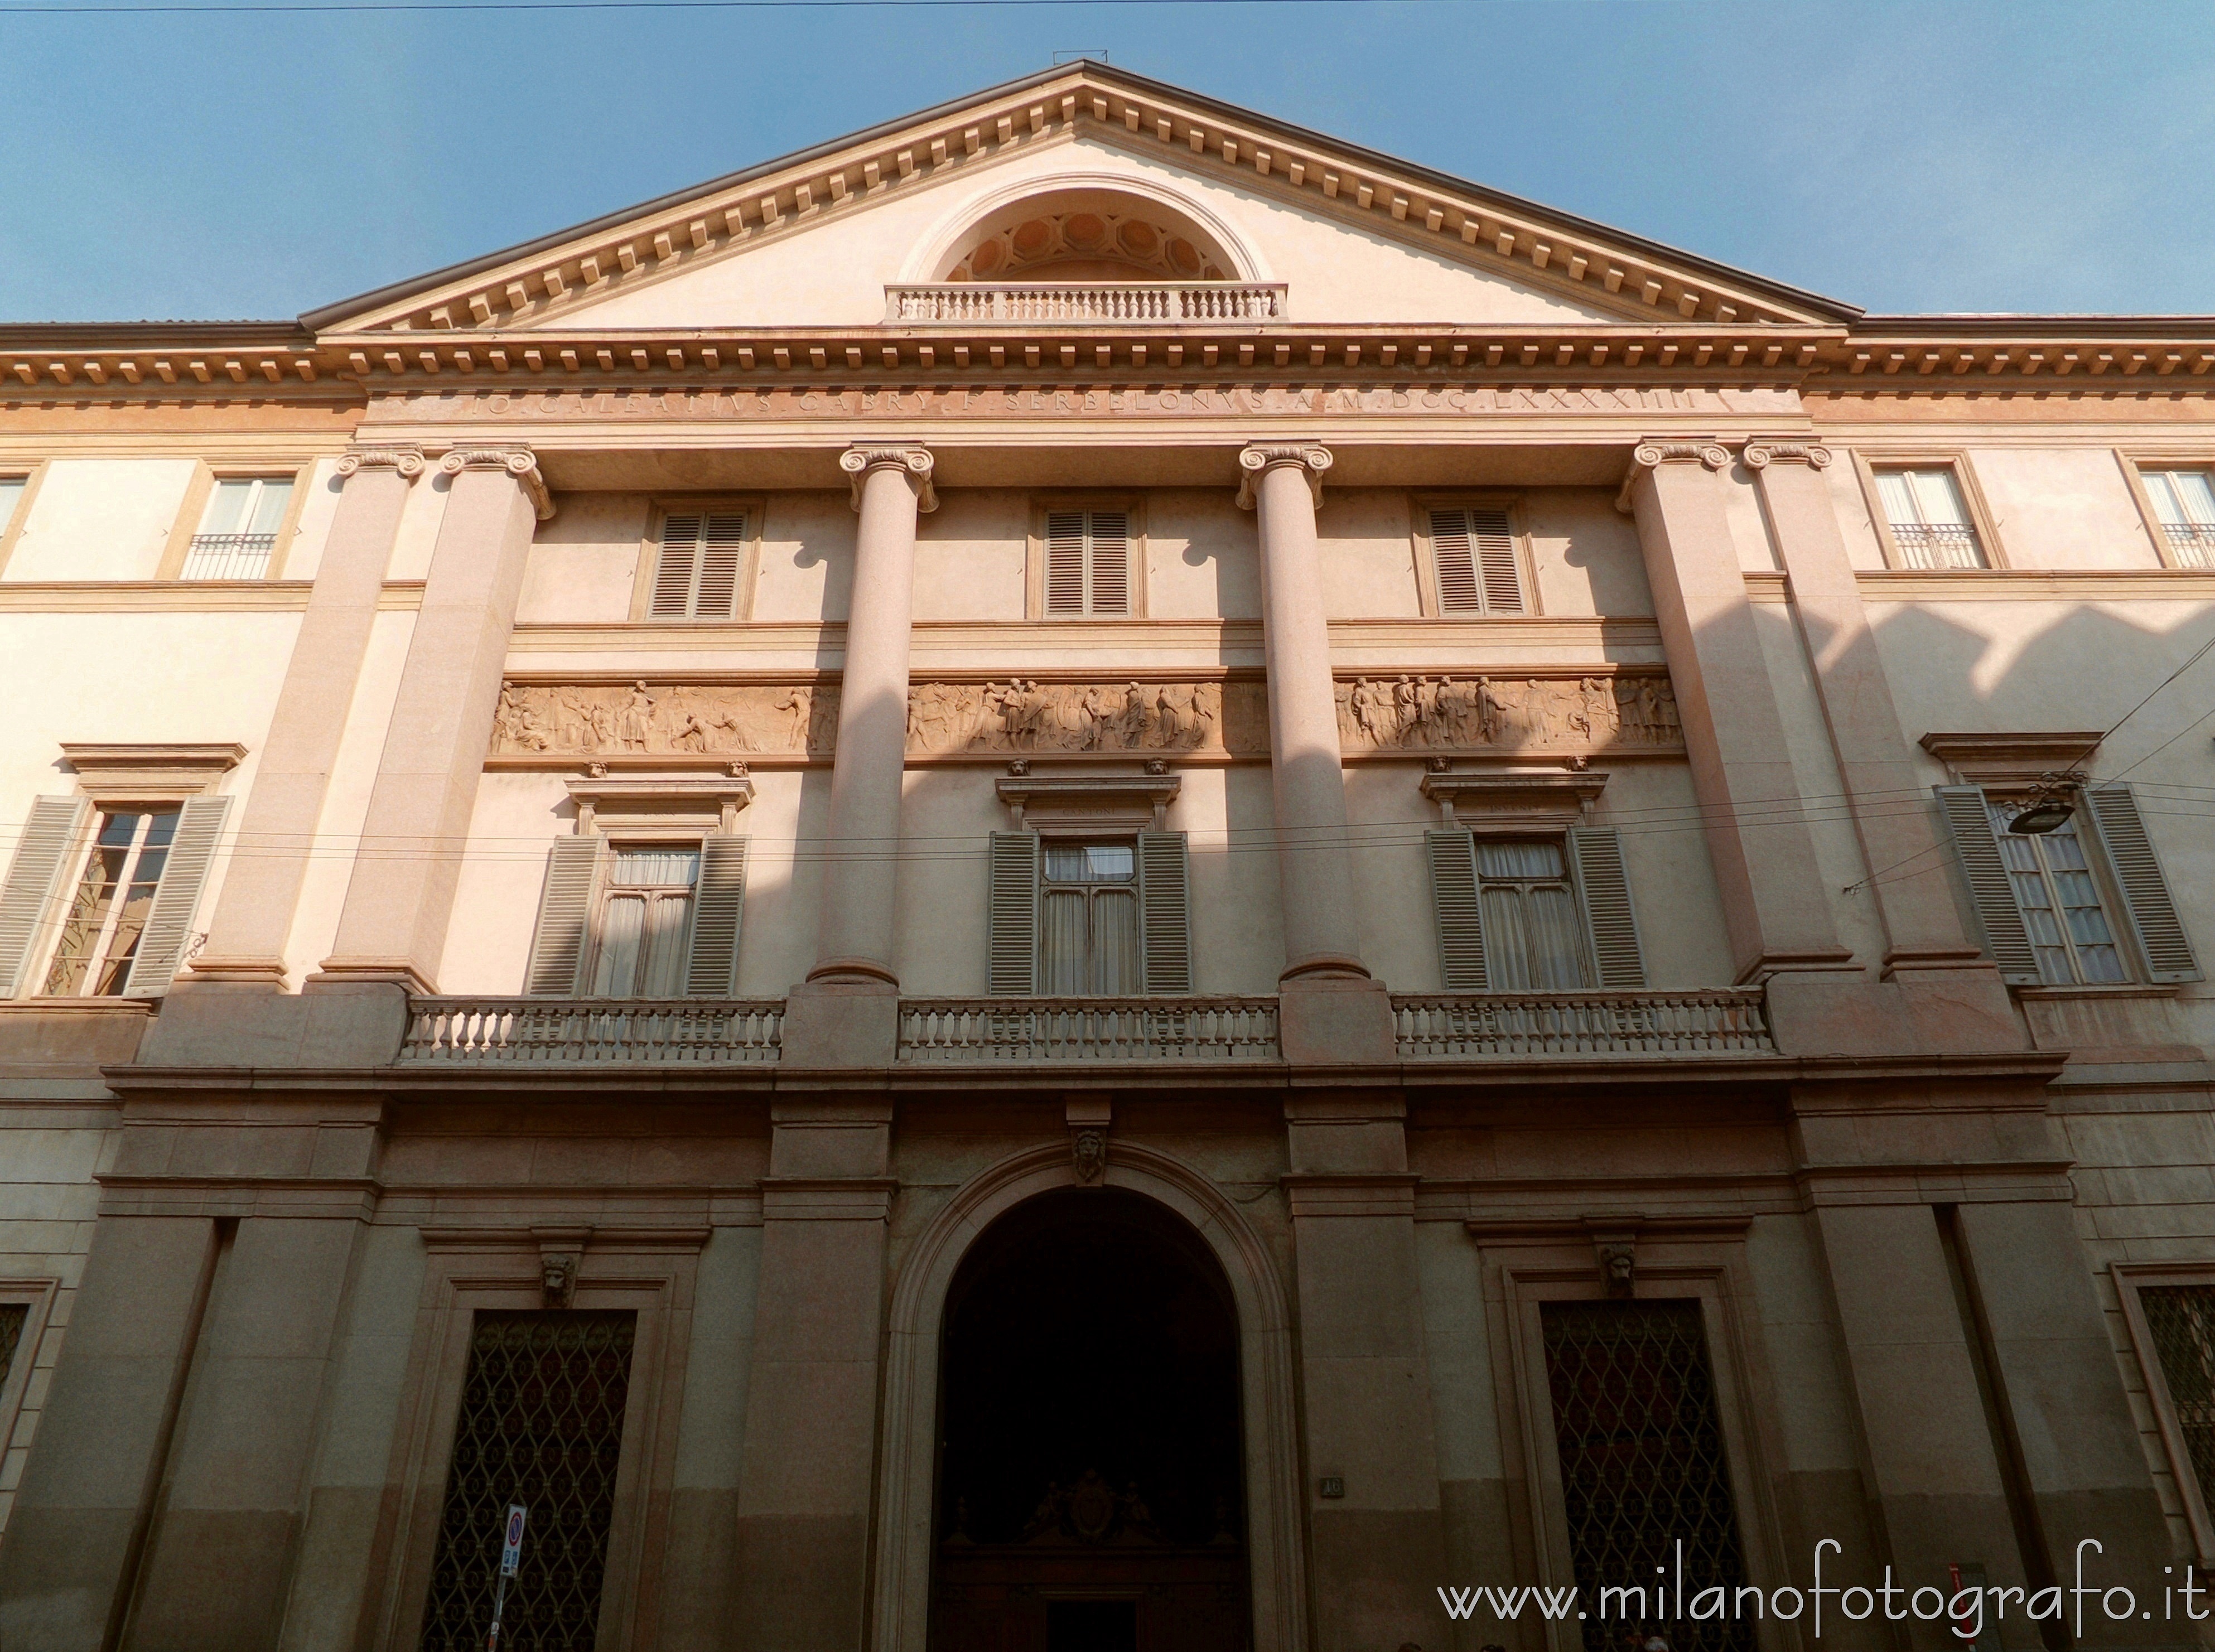 Milan (Italy): Facade of Serbelloni Palace - Milan (Italy)